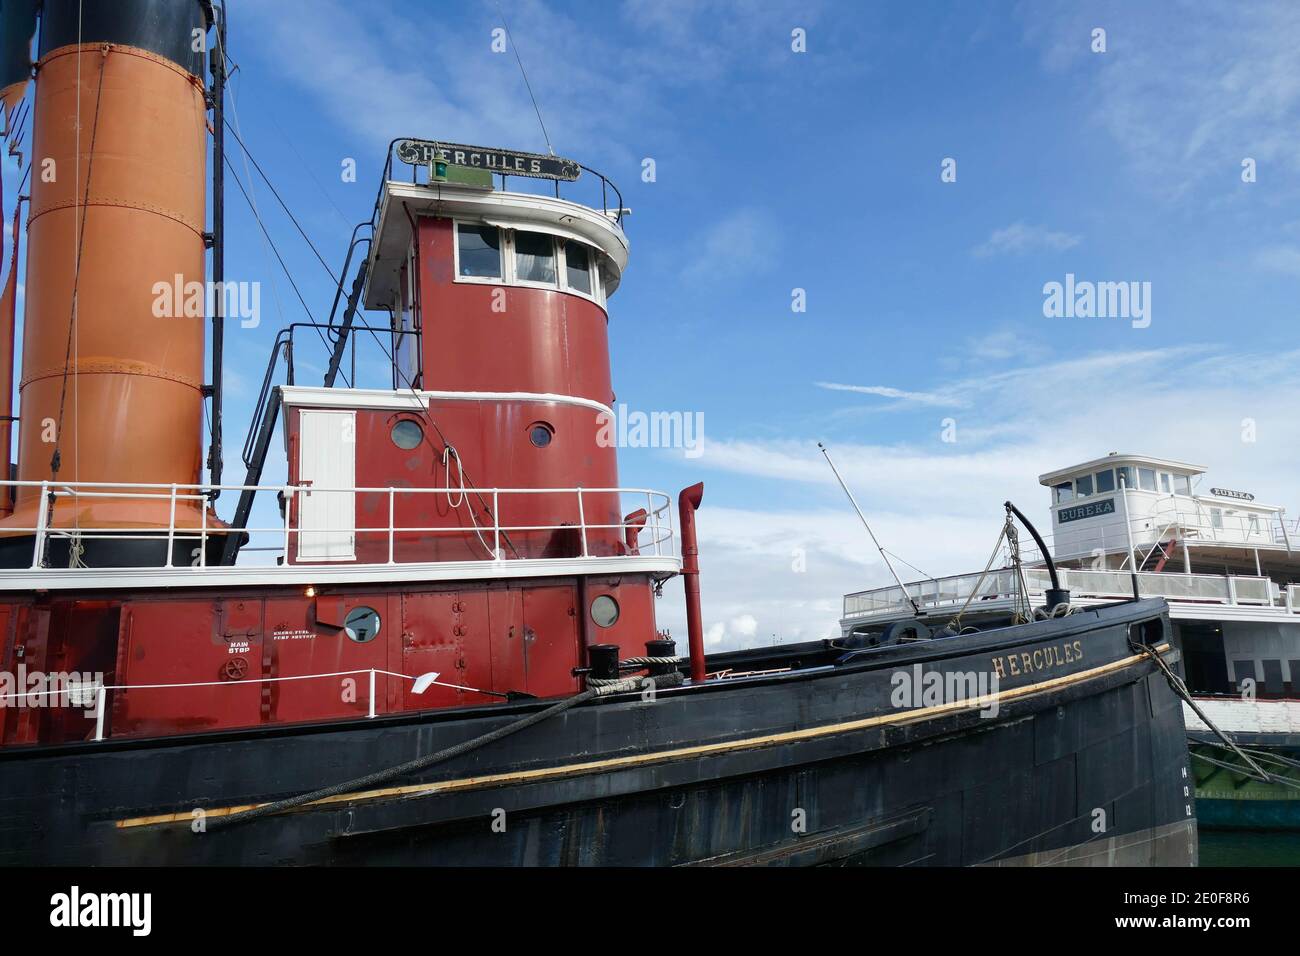 SAN FRANCISCO - NOV 27, 2019 - Hercules steam powered tugboat, at anchor, San Francisco Maritime National Historical Park,  California Stock Photo